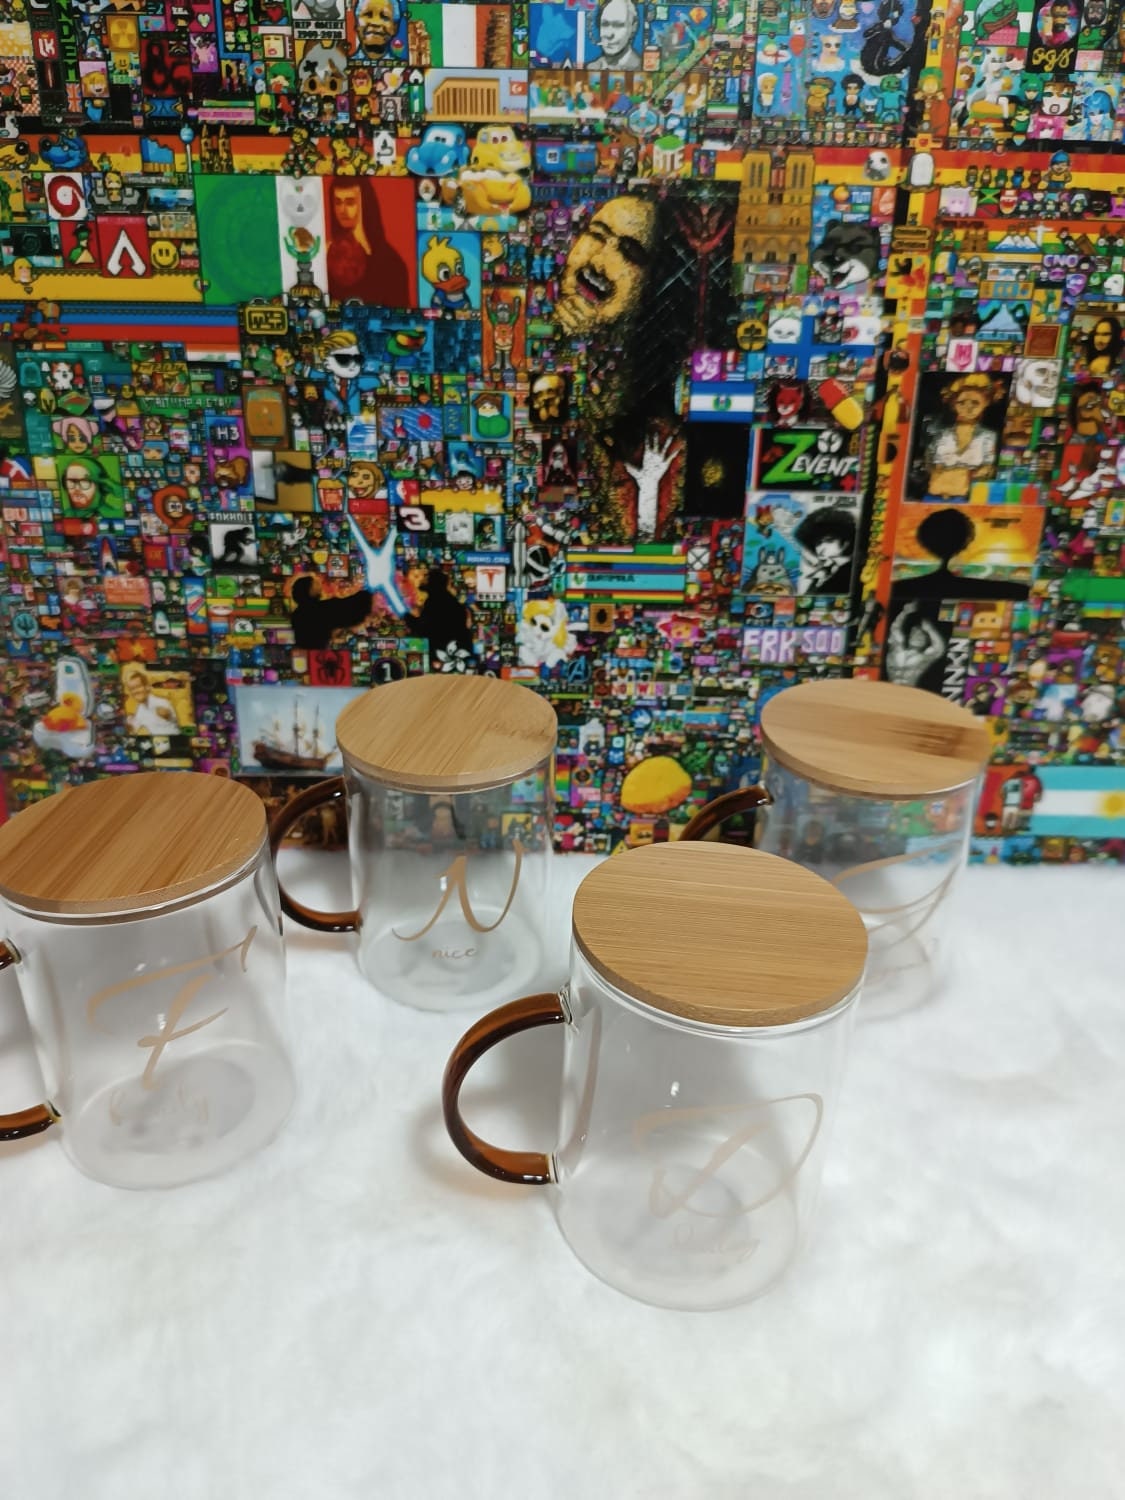 Tasse Ceramique à Café, Lot de Mug Cafe de 4 Pcs - 400ml, Tasses à Thé avec  Poignée - Couleur Bleu , Vaisselle de Service à Café pour 4 Personnes :  : Cuisine et Maison